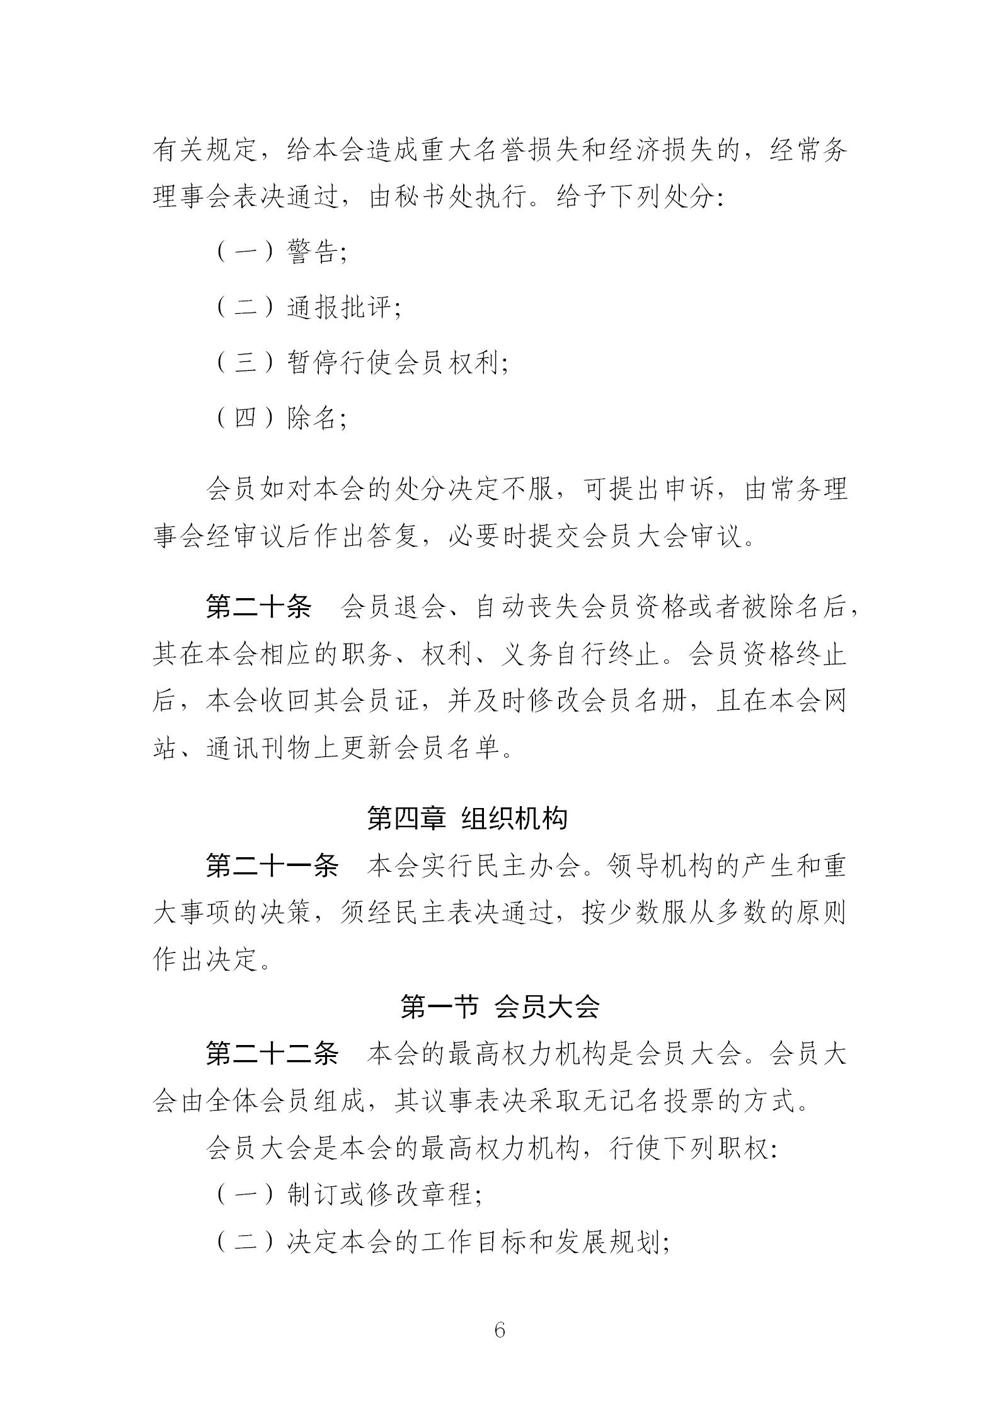 3-广东省羽毛球协会新章程20221107-根据民政厅修改意见修改_06